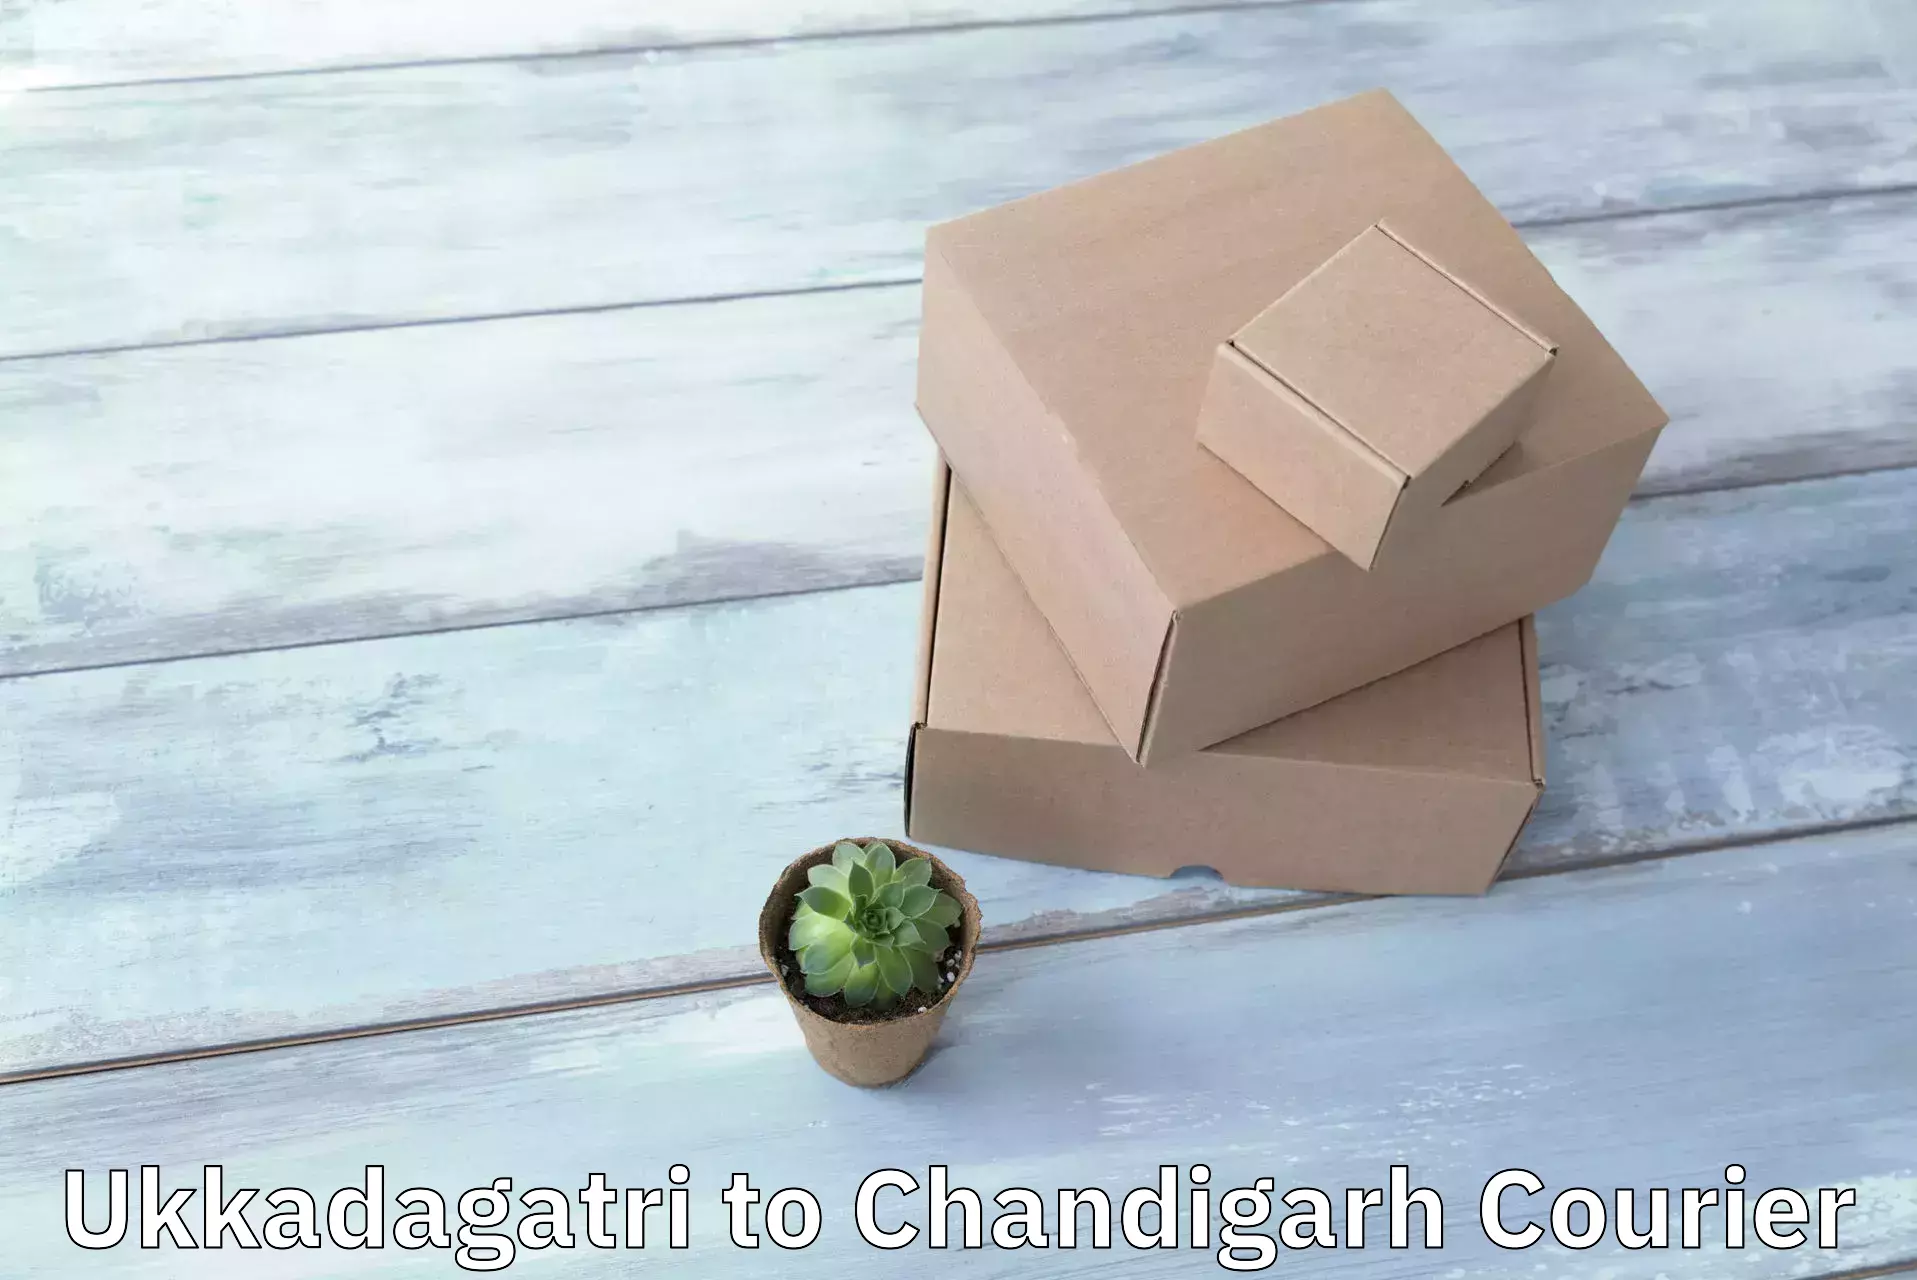 Quick courier services Ukkadagatri to Chandigarh